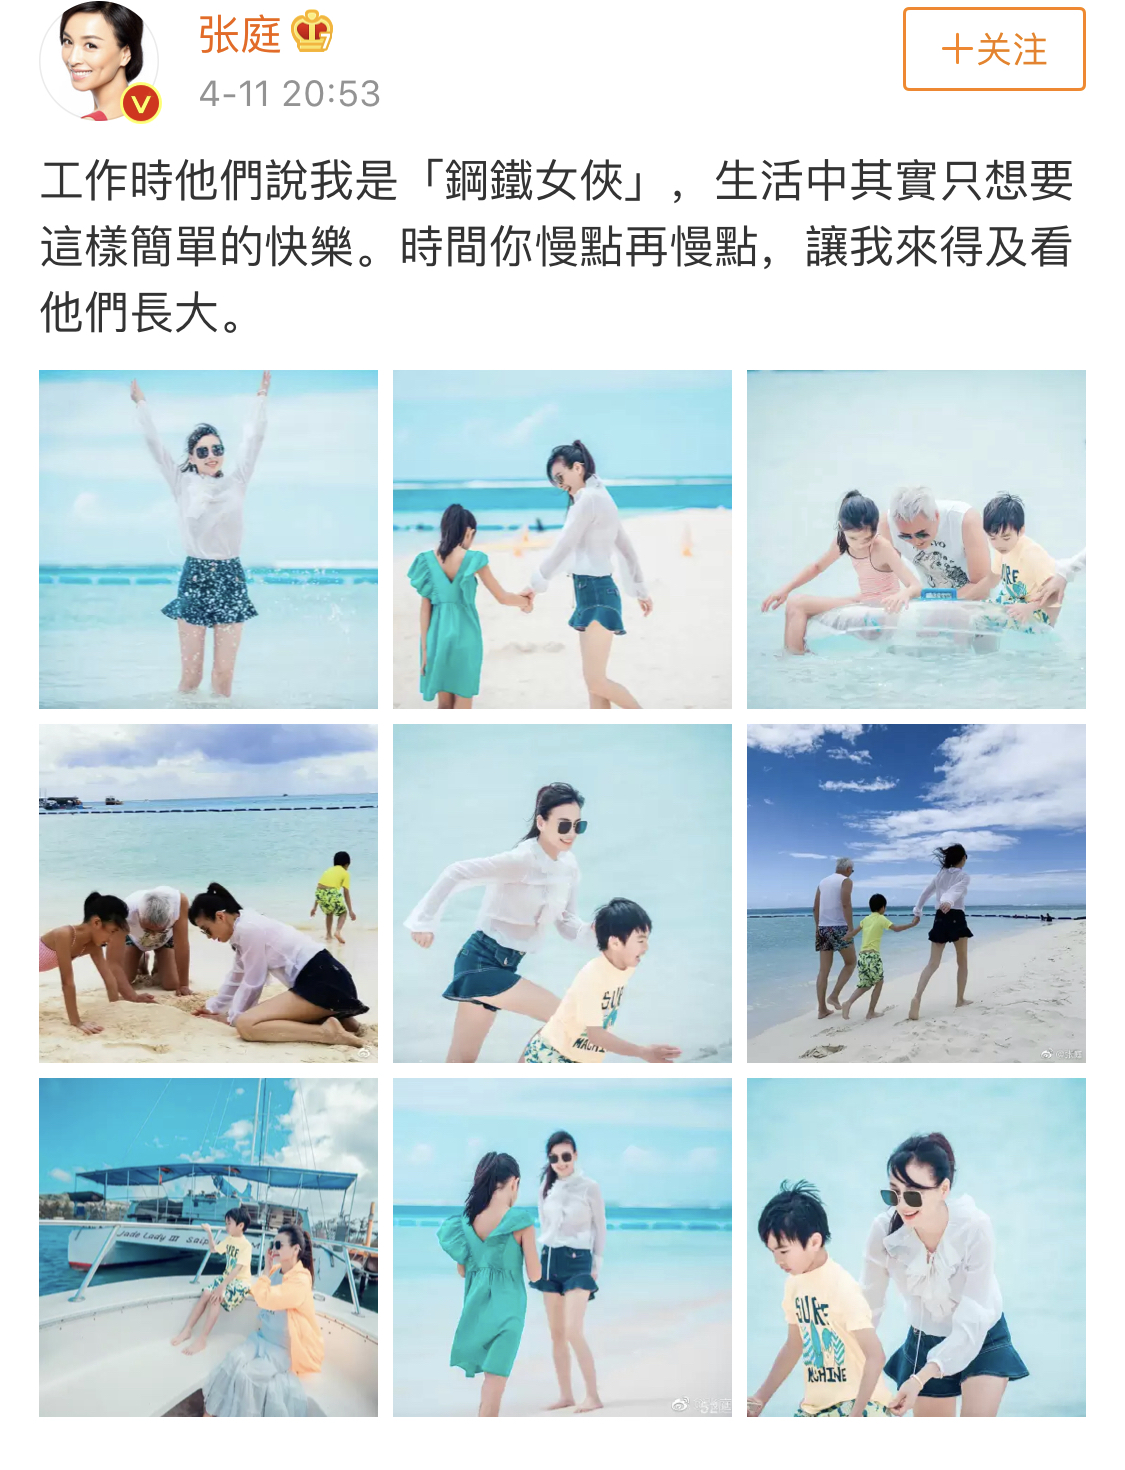 张庭林瑞阳陪孩子沙滩游玩，一家四口坐游艇出海享受生活